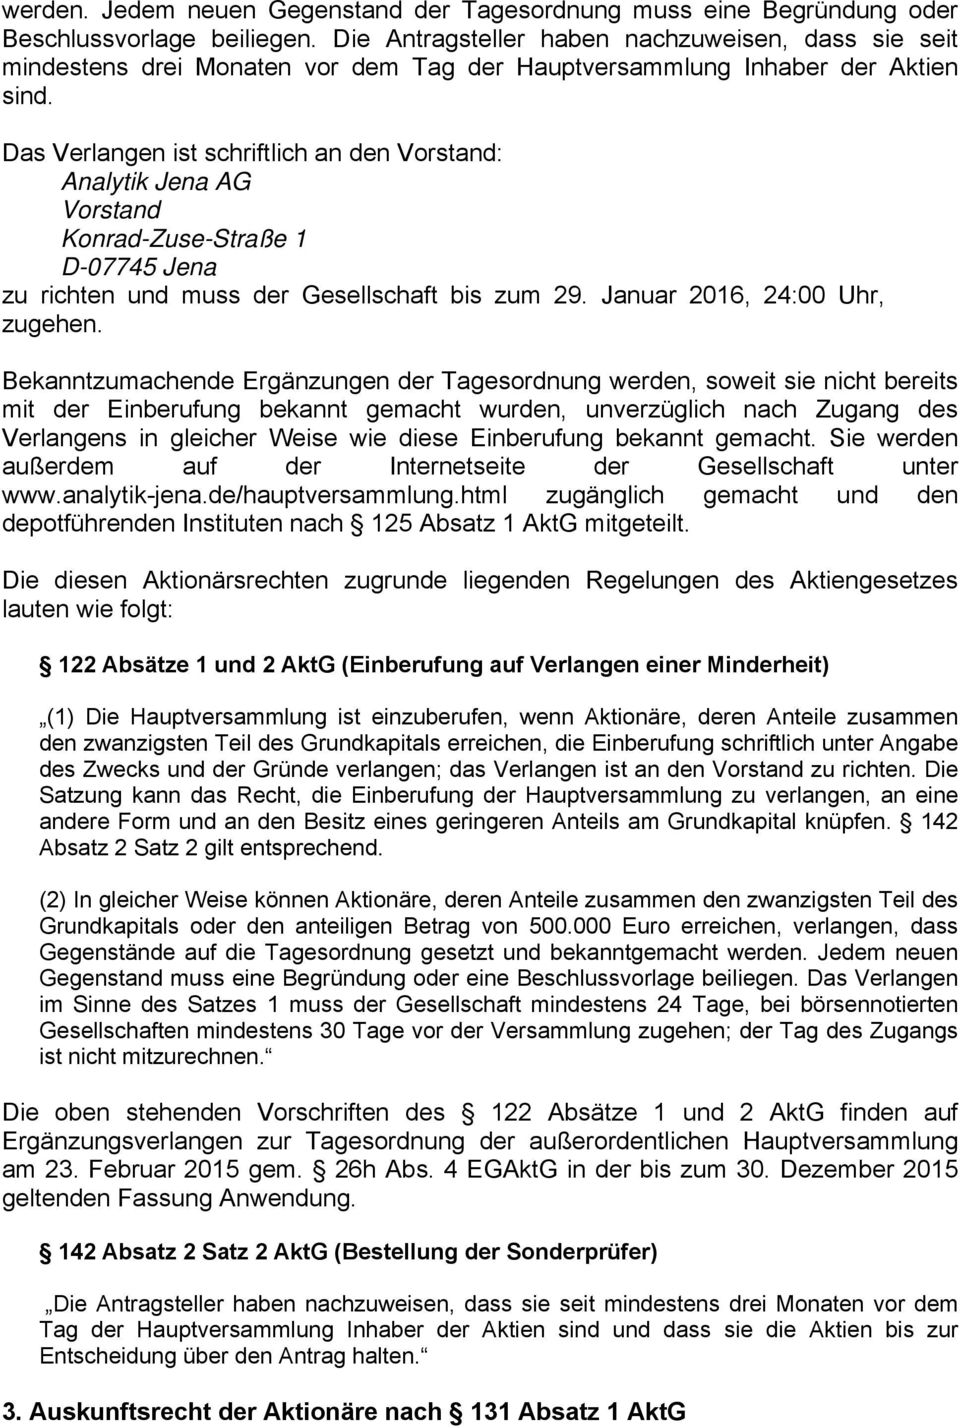 Das Verlangen ist schriftlich an den Vorstand: Analytik Jena AG Vorstand Konrad-Zuse-Straße 1 D-07745 Jena zu richten und muss der Gesellschaft bis zum 29. Januar 2016, 24:00 Uhr, zugehen.